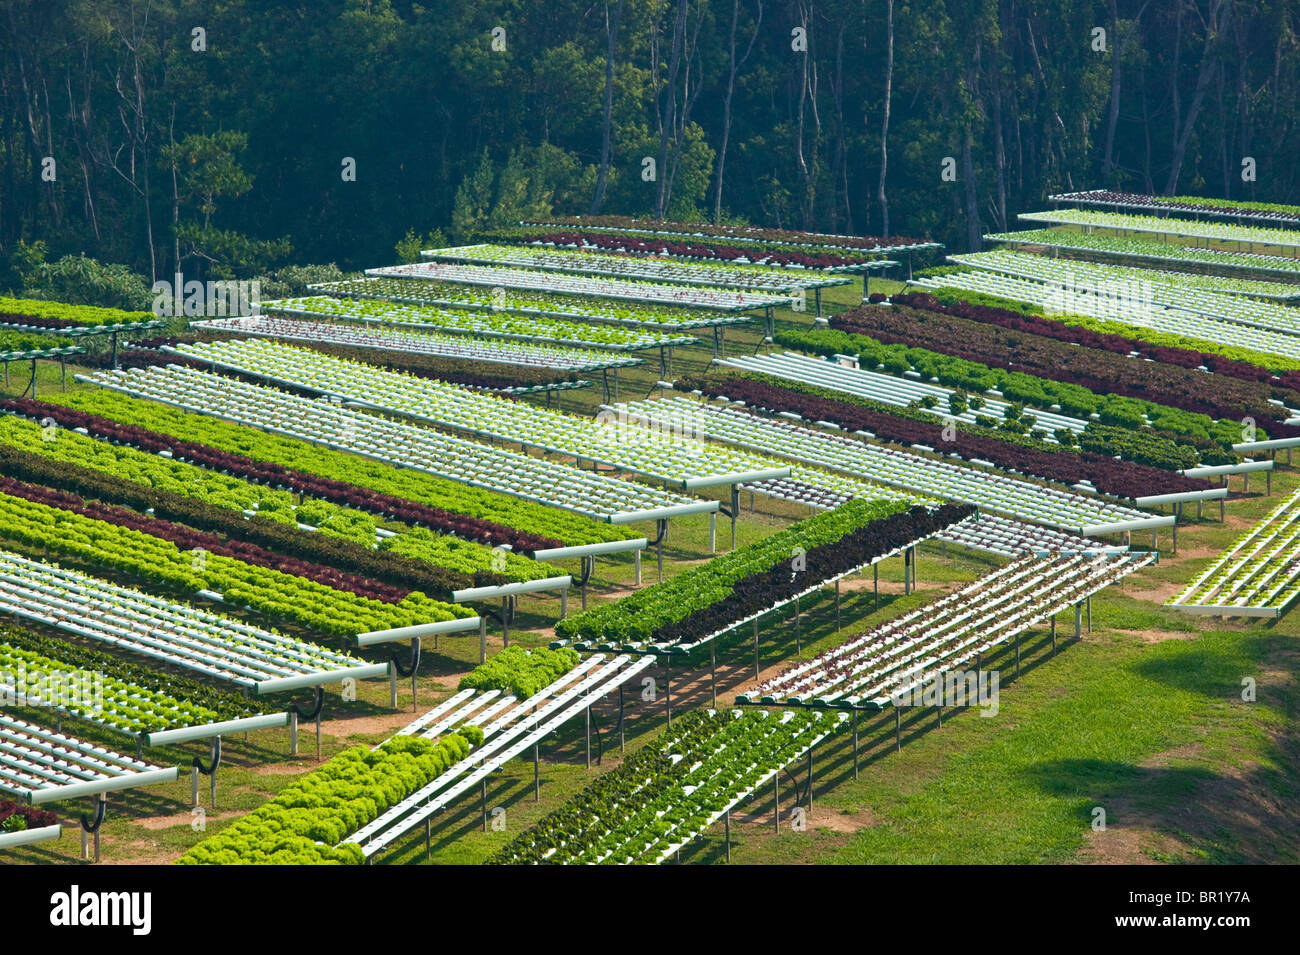 L'Australie, Queensland, Sunshine Coast, Pomona. Les champs en terrasses de ferme. Macrobiotique Banque D'Images